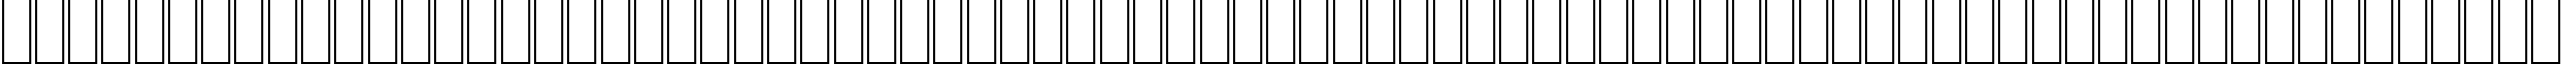 Пример написания английского алфавита шрифтом AGA Petra Regular